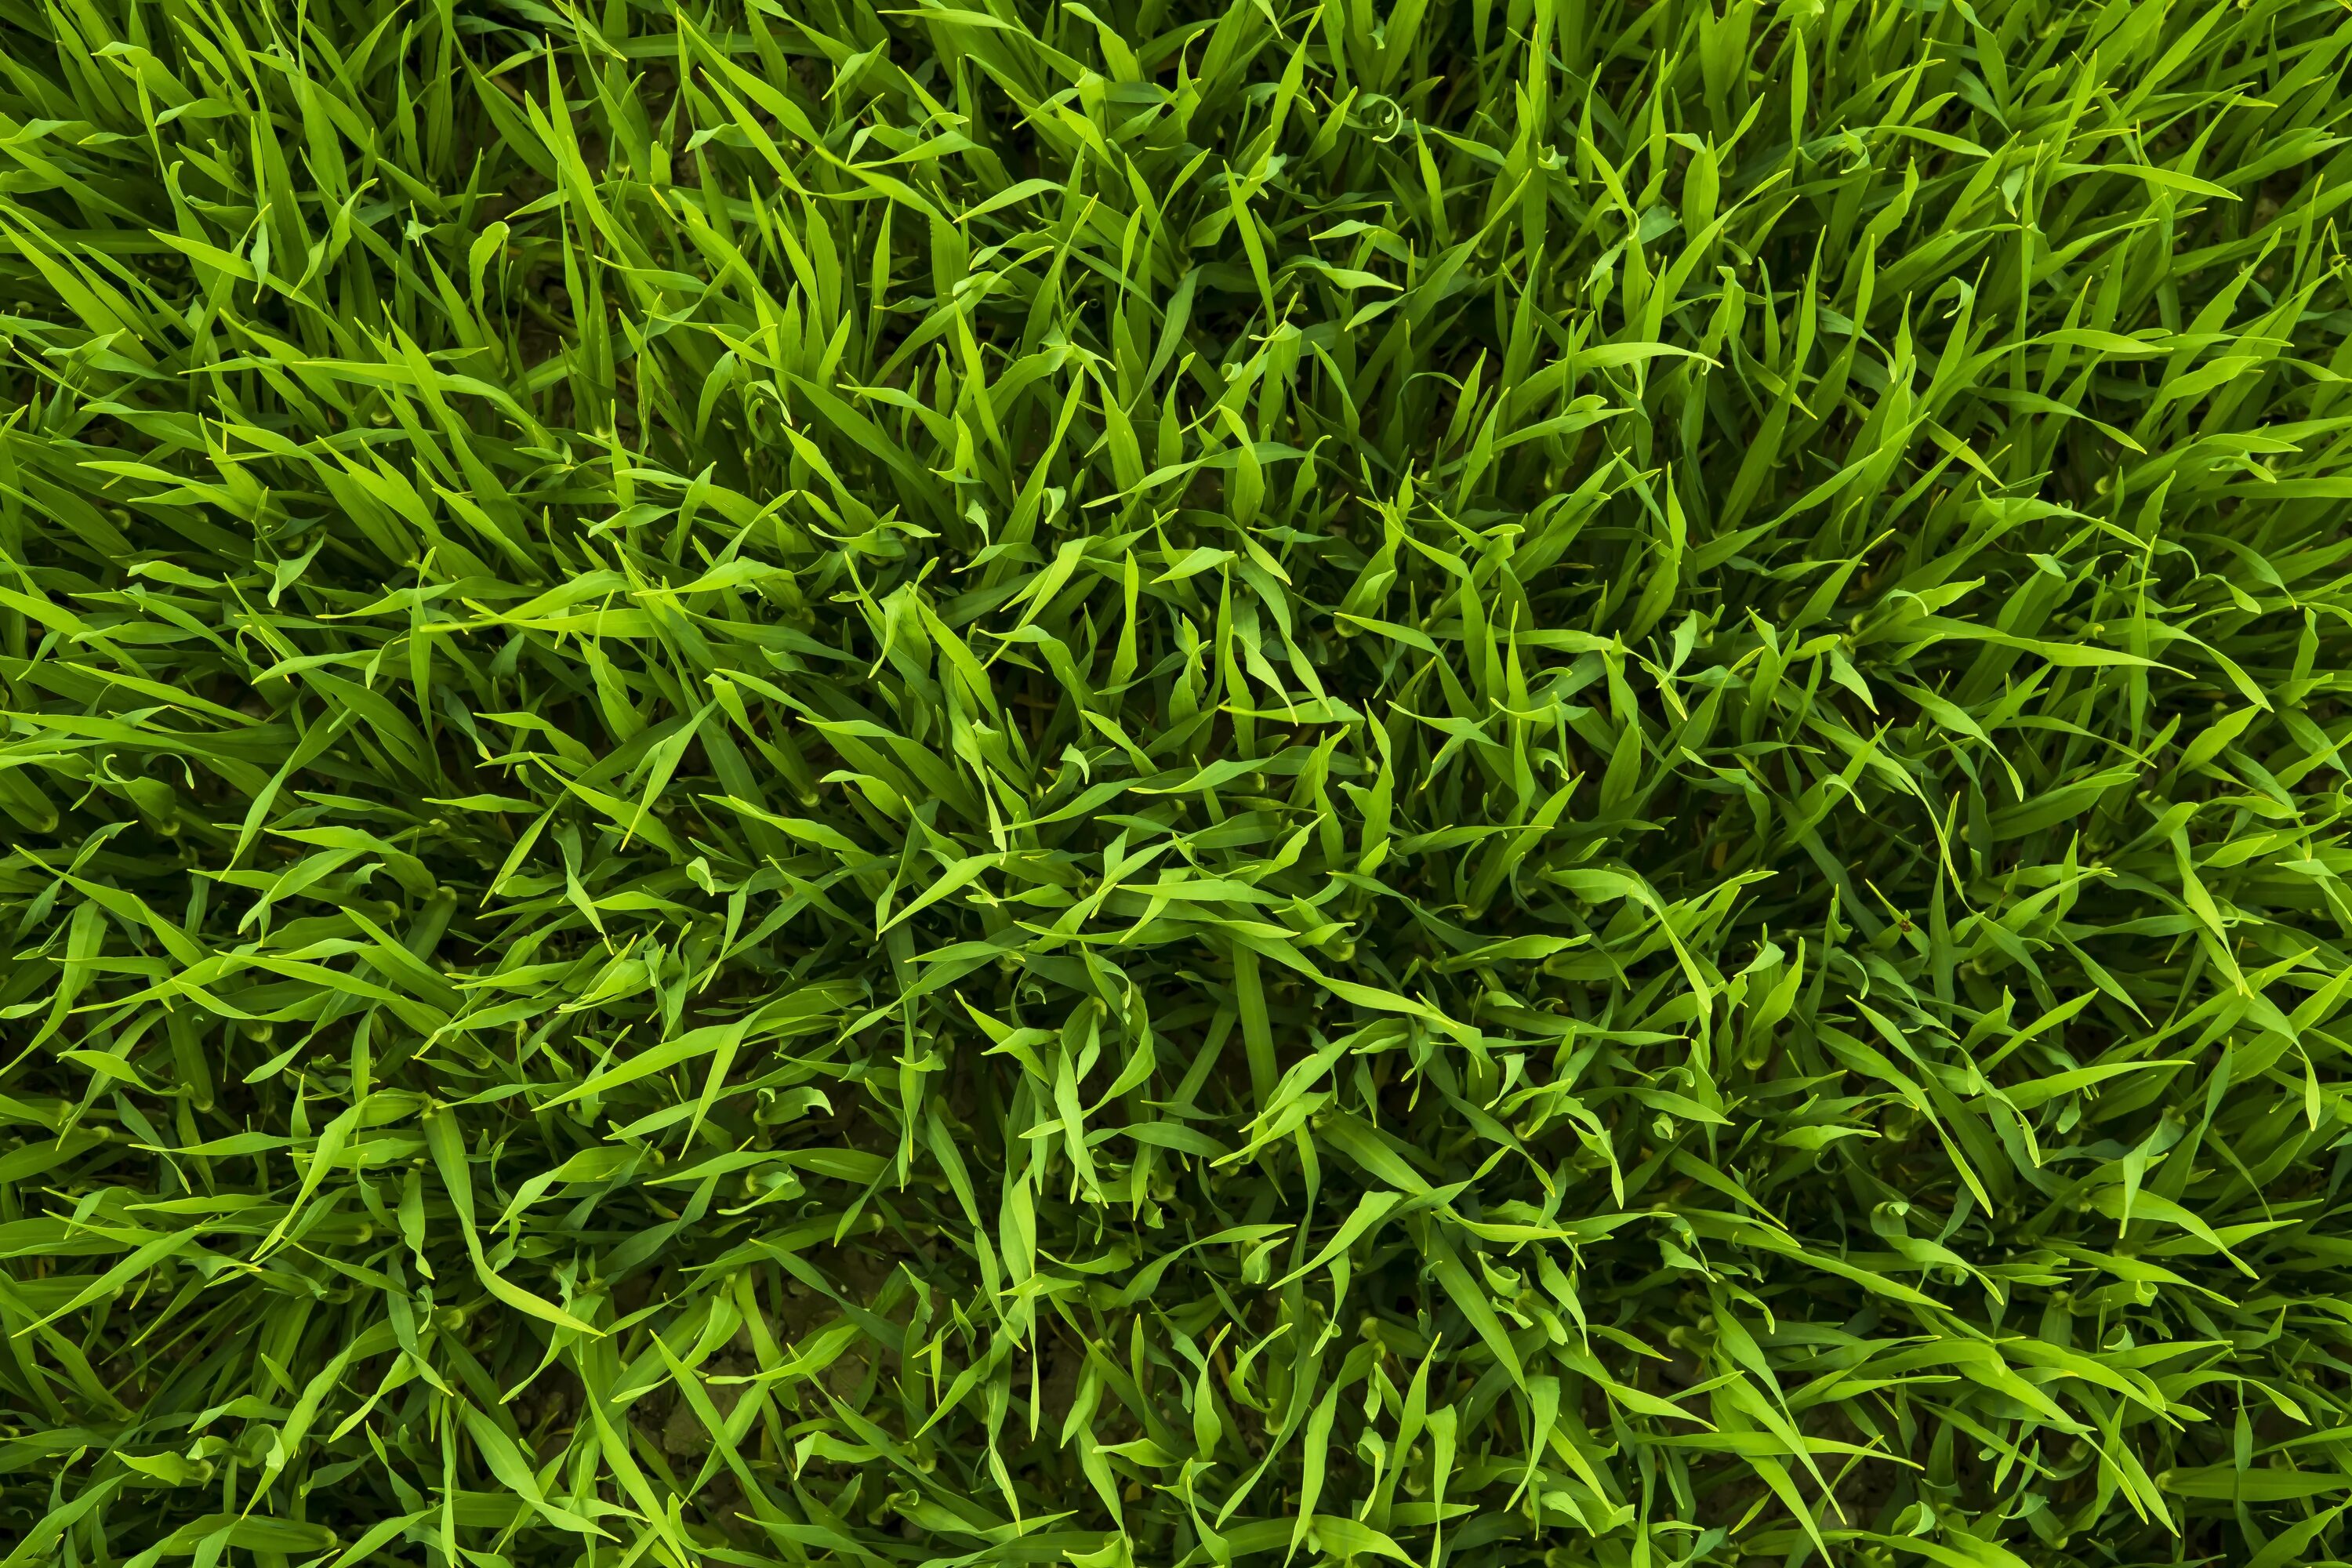 Густая зелень число. Газон Грин Медоу. Трава сверху. Трава вид сверху. Текстура травы.